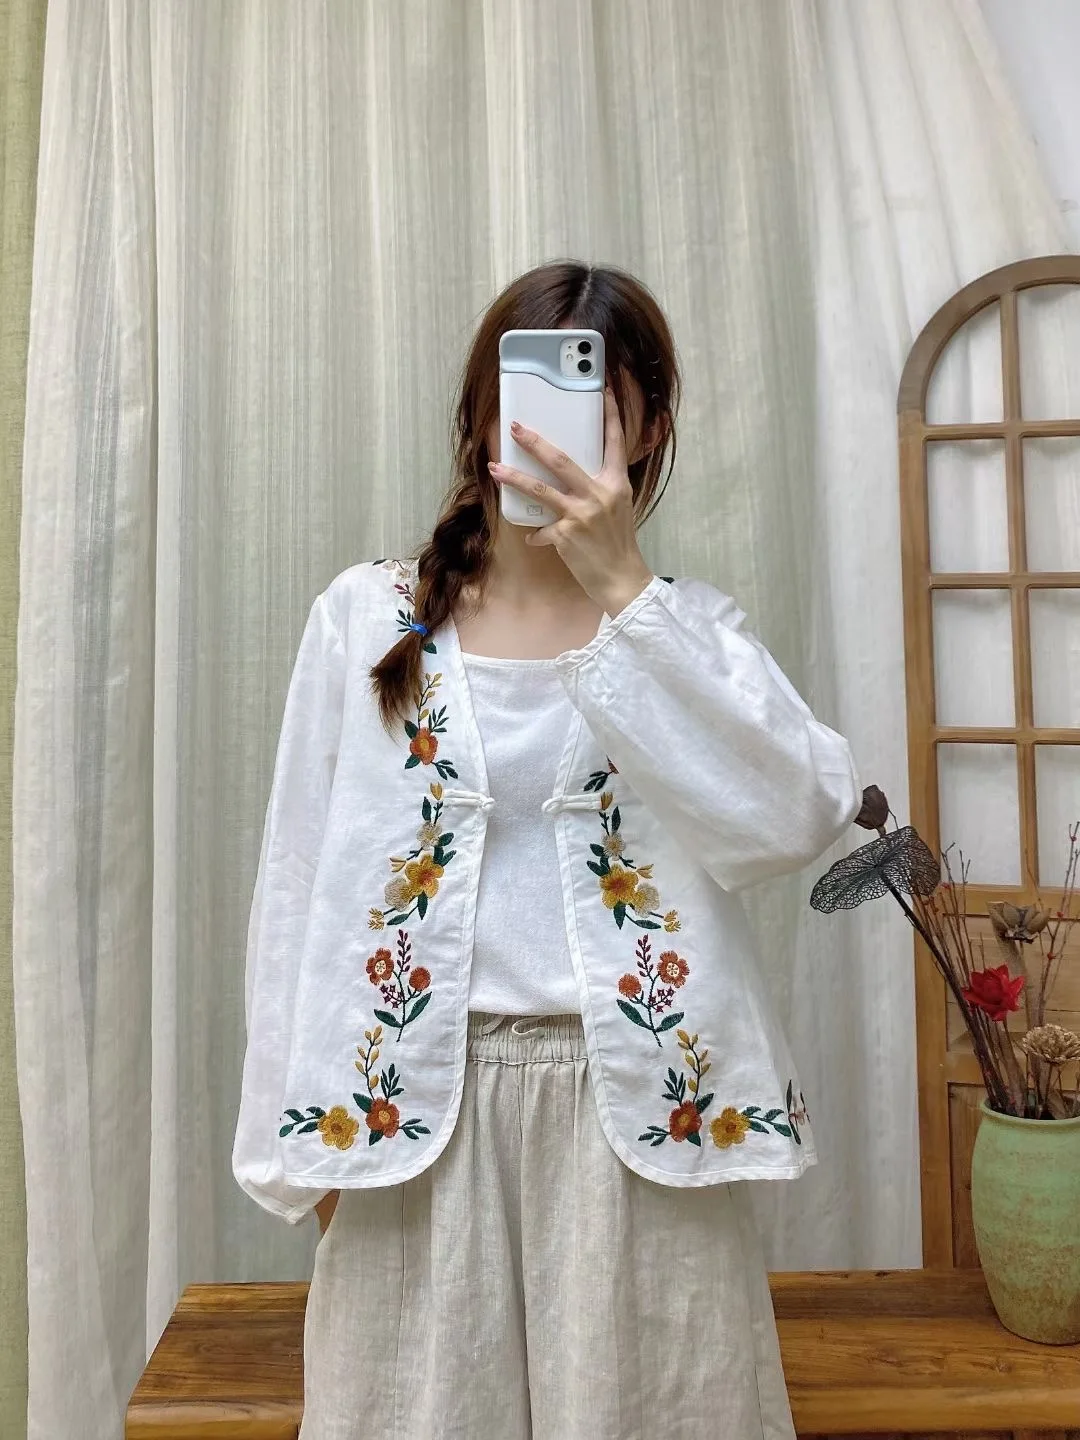 

Женская рубашка с жаккардовой вышивкой, элегантная рубашка из хлопка и льна в китайском стиле ретро, осень 2021